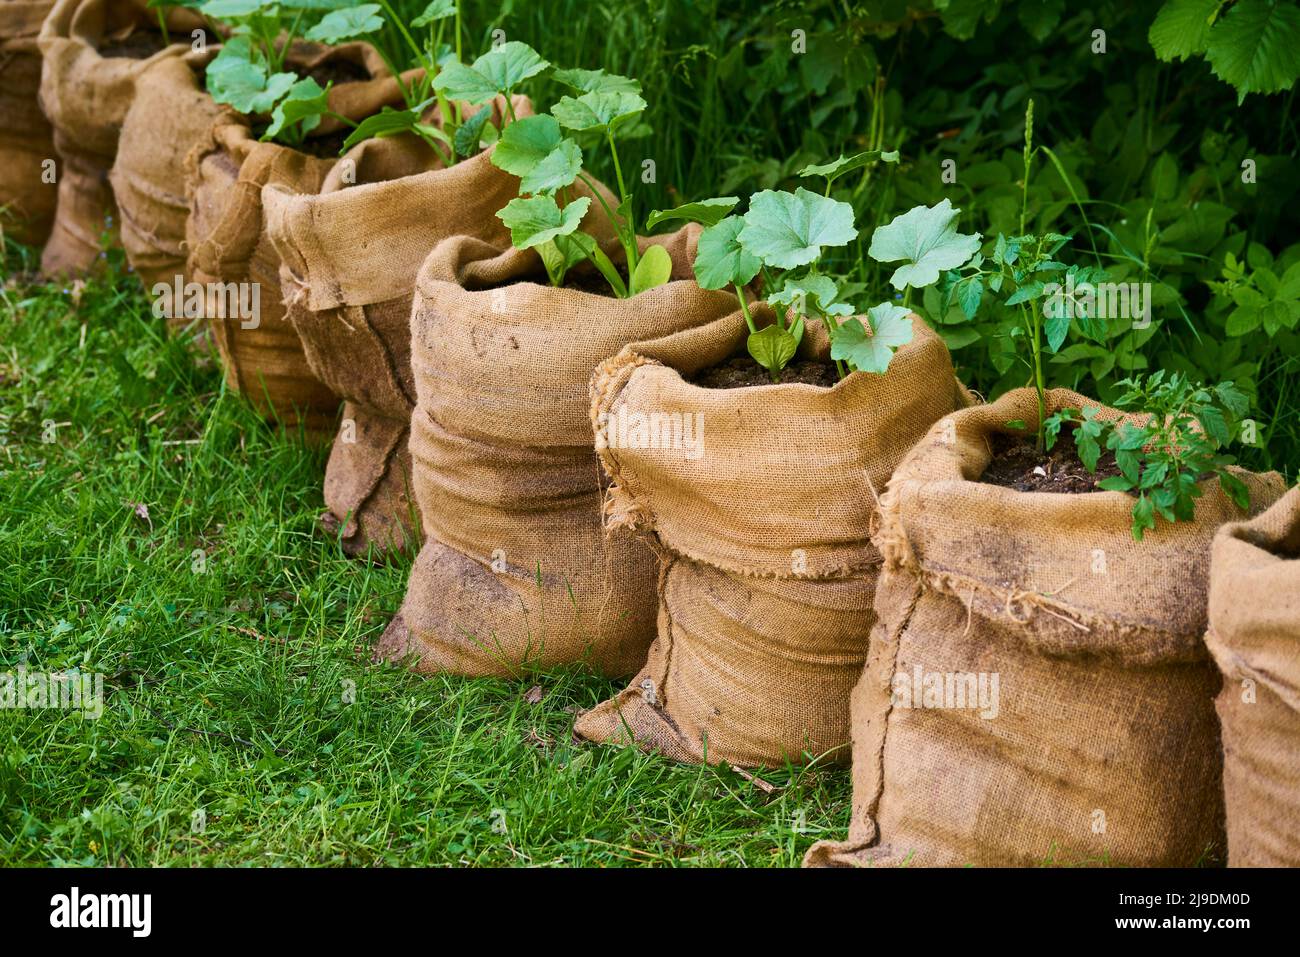 La culture de plantules de citrouille et de tomate dans des sacs de jute remplis de terre compostée dans le jardin. Banque D'Images